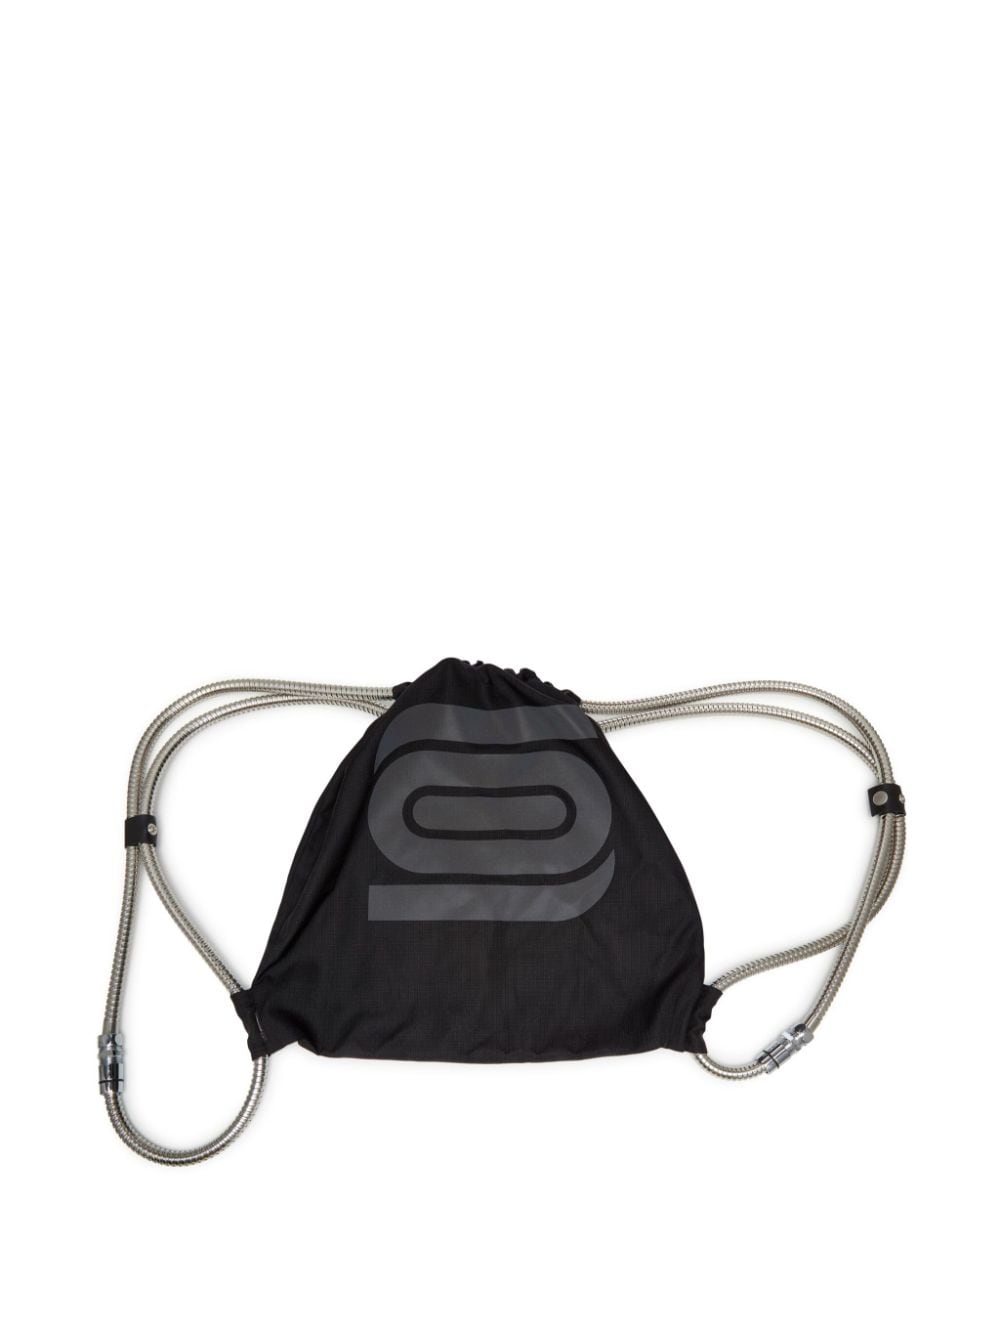 Olly Shinder Shower hose gym bag - Black von Olly Shinder